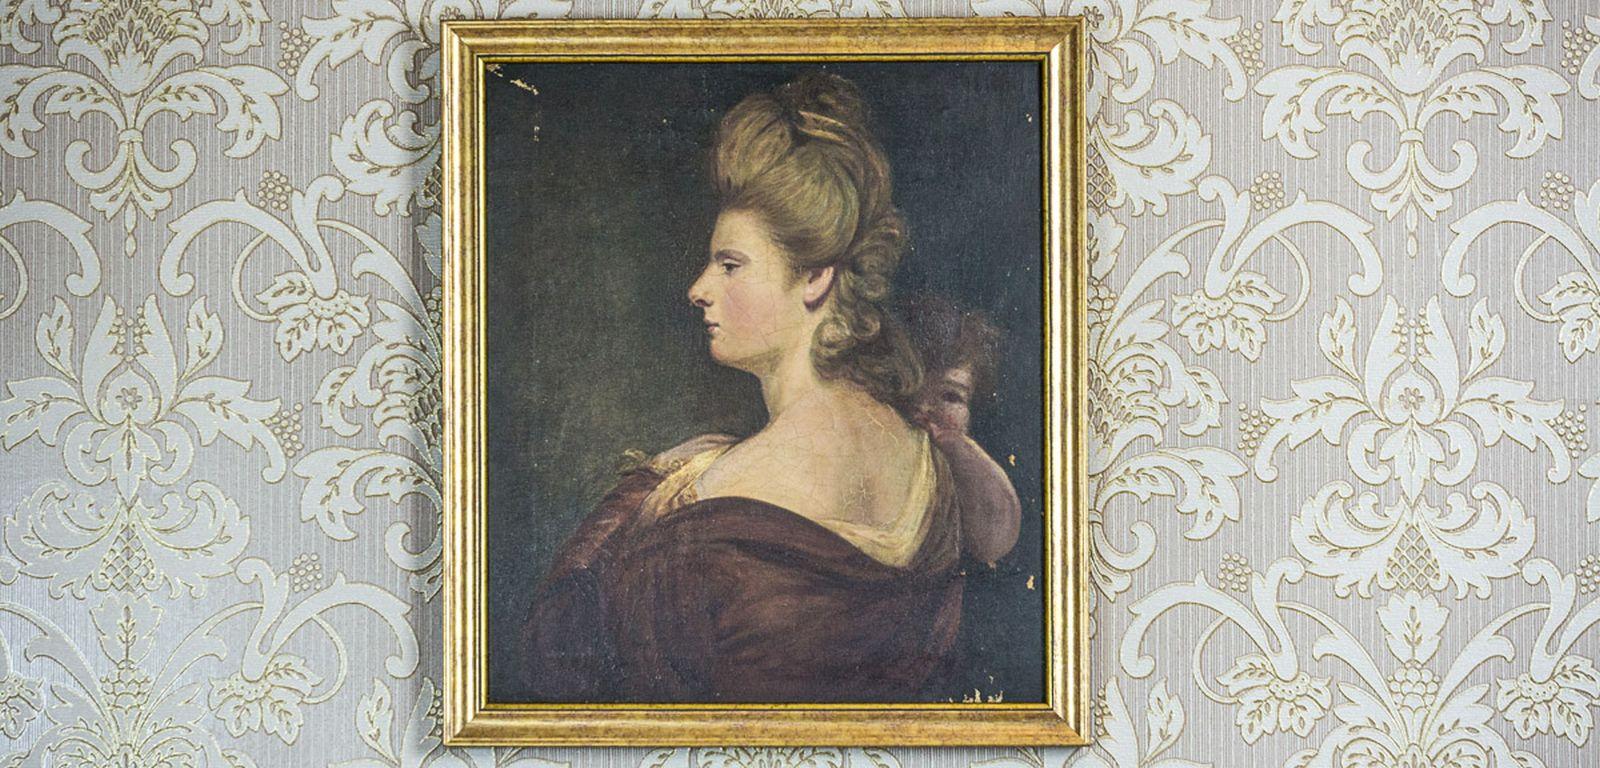 Wir präsentieren Ihnen dieses Öl auf Leinwand aus dem frühen 19. Jahrhundert mit dem Porträt einer Dame im Profil, die ein Baby auf dem Arm hält.
Der Zustand dieses Kunstwerkes ist gut. Allerdings ist die Farbe an einigen Stellen abgesplittert, und